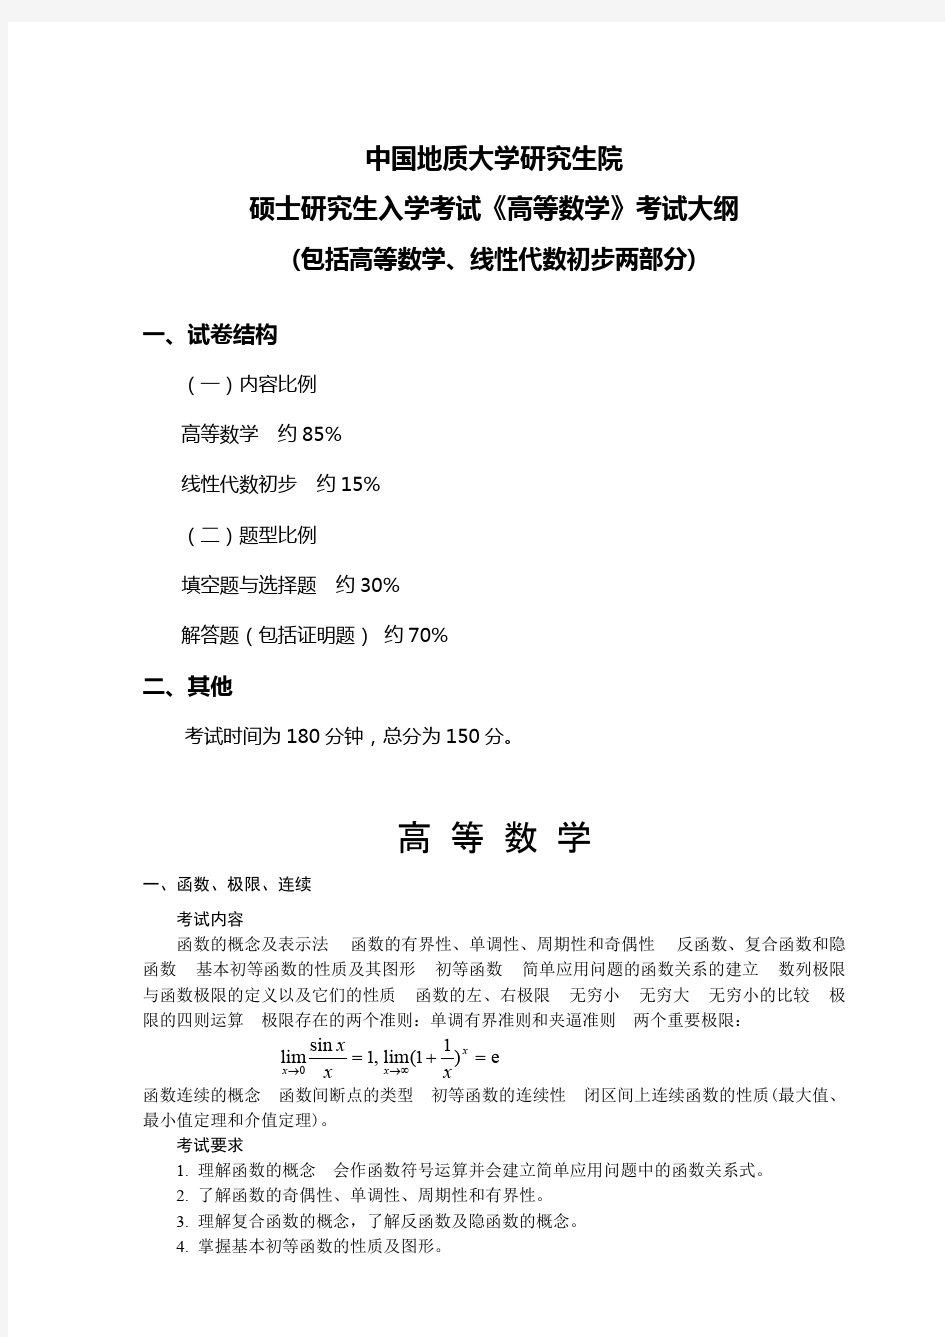 中国地质大学(武汉)609-高等数学2020年考研专业课初试大纲